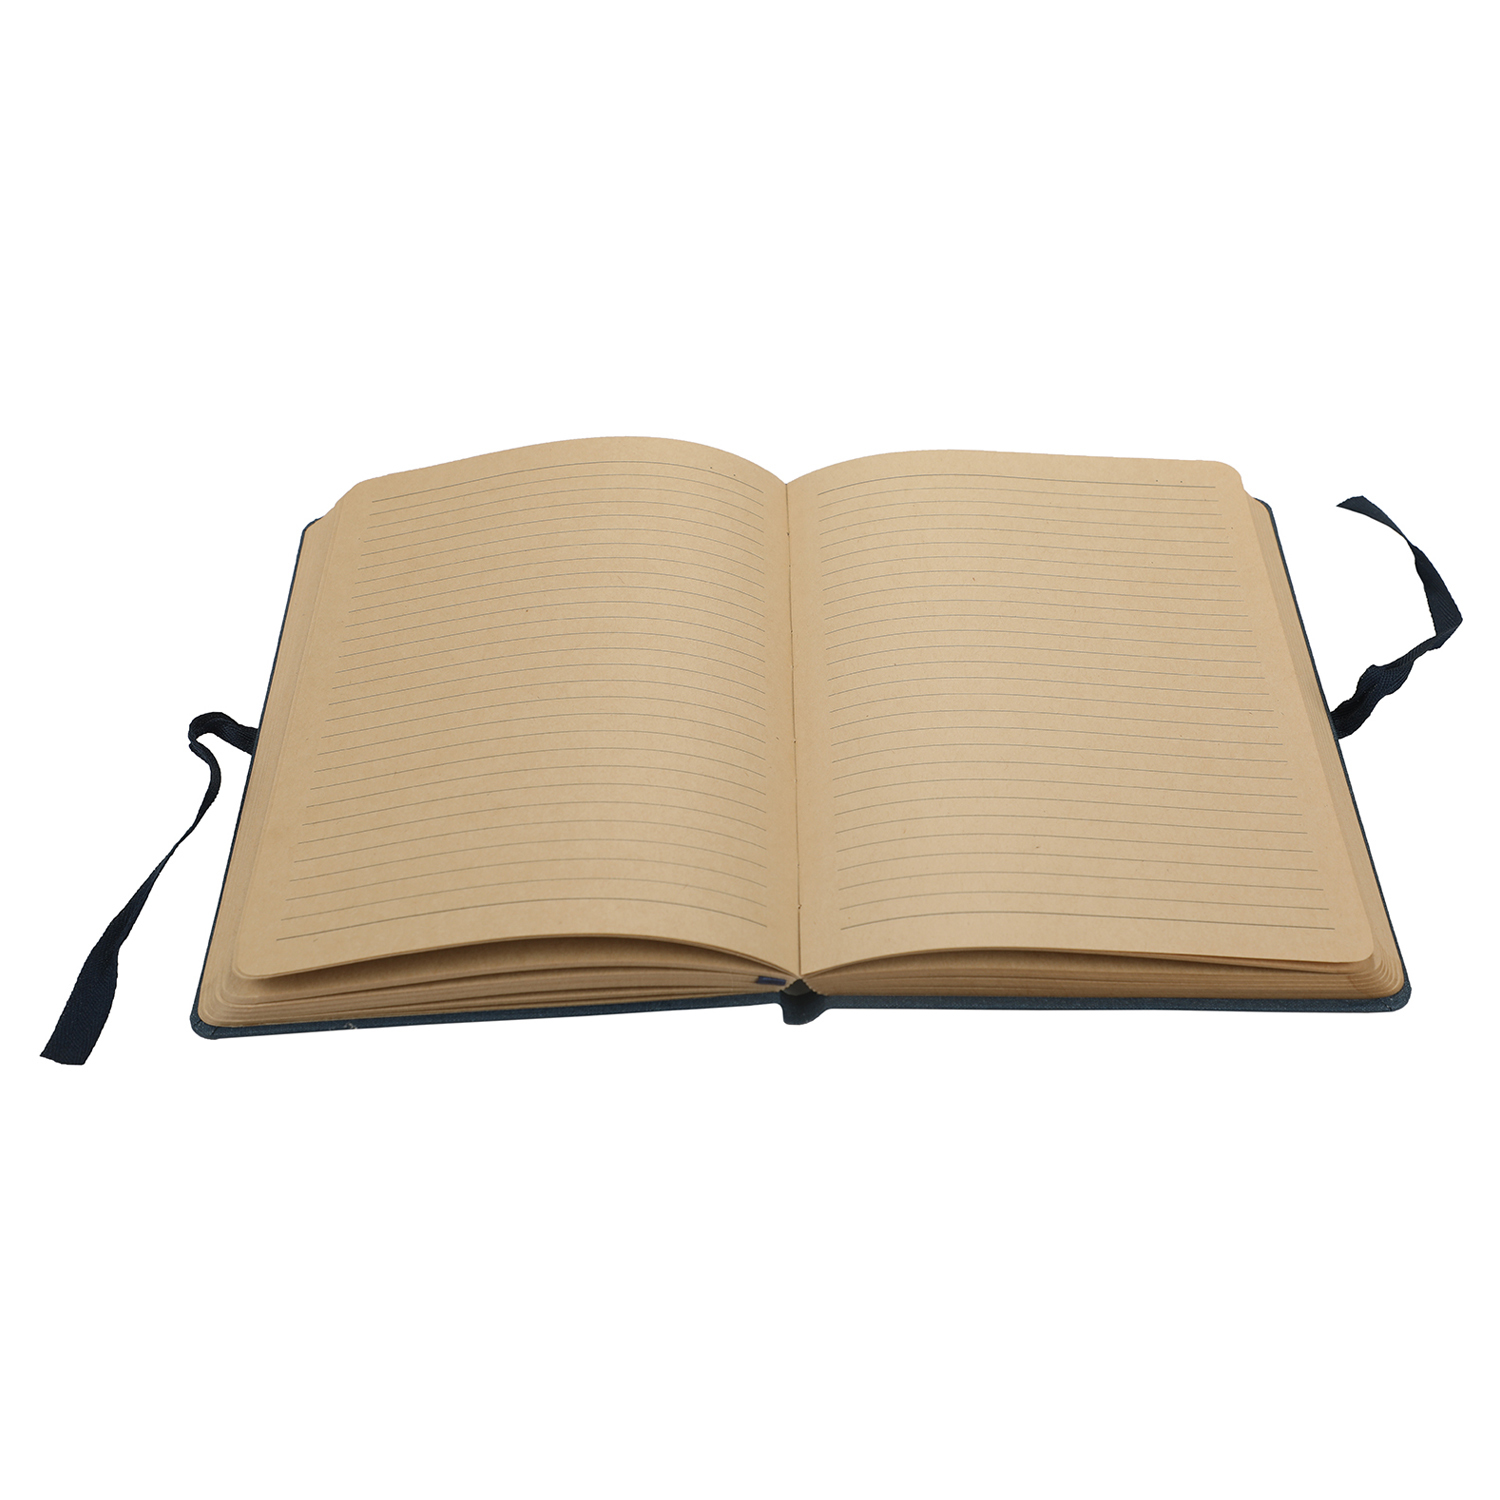 Comma Artisan  A5 Size  Hard Bound Notebook (Navy Blue)